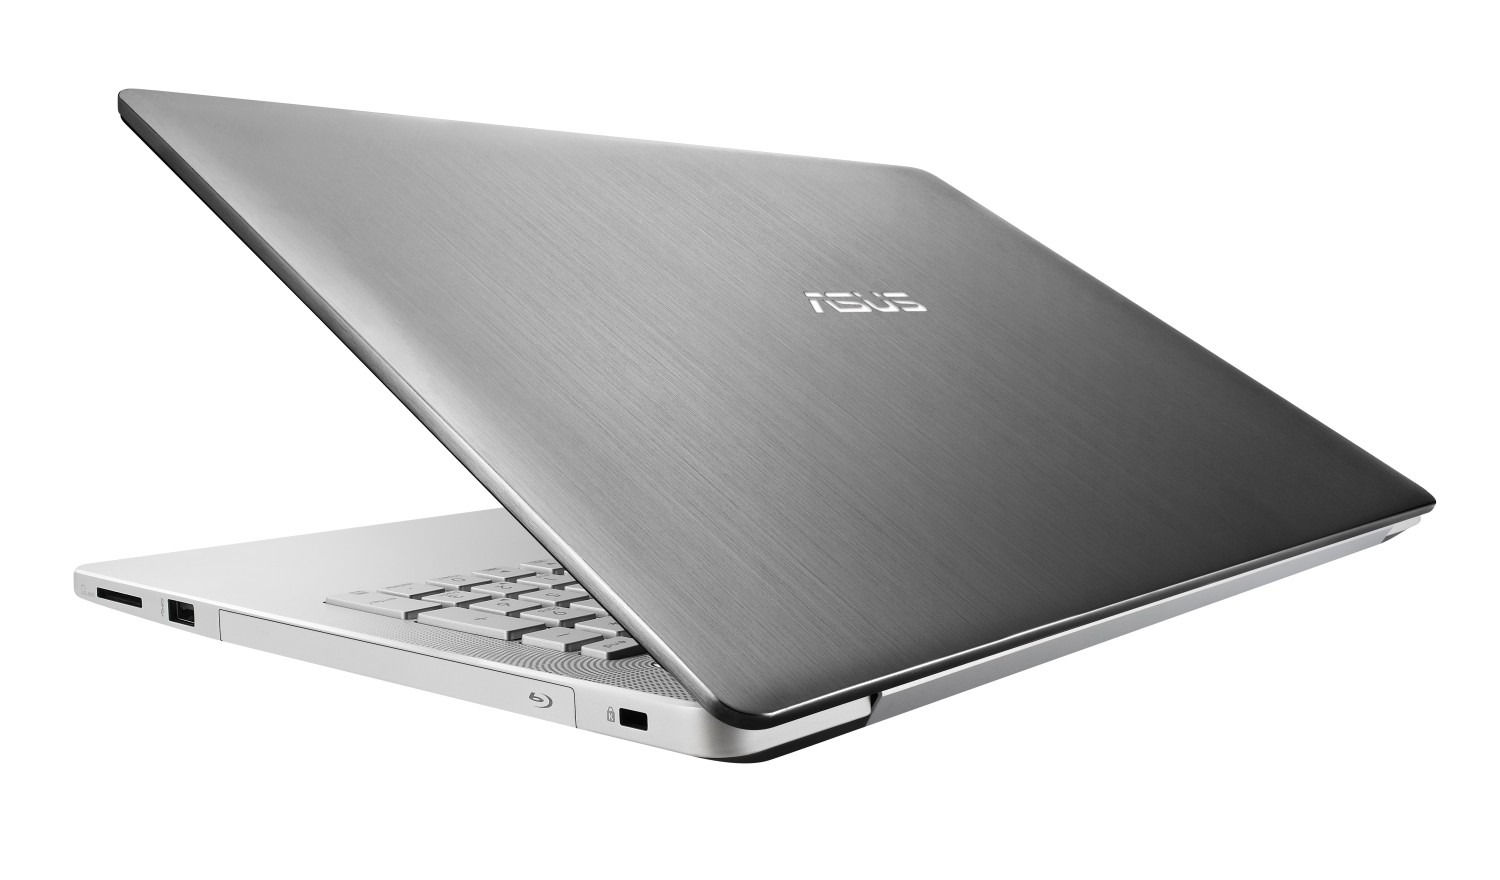 Multimediální notebook Asus N550 je v Čechách, má čtyři reproduktory